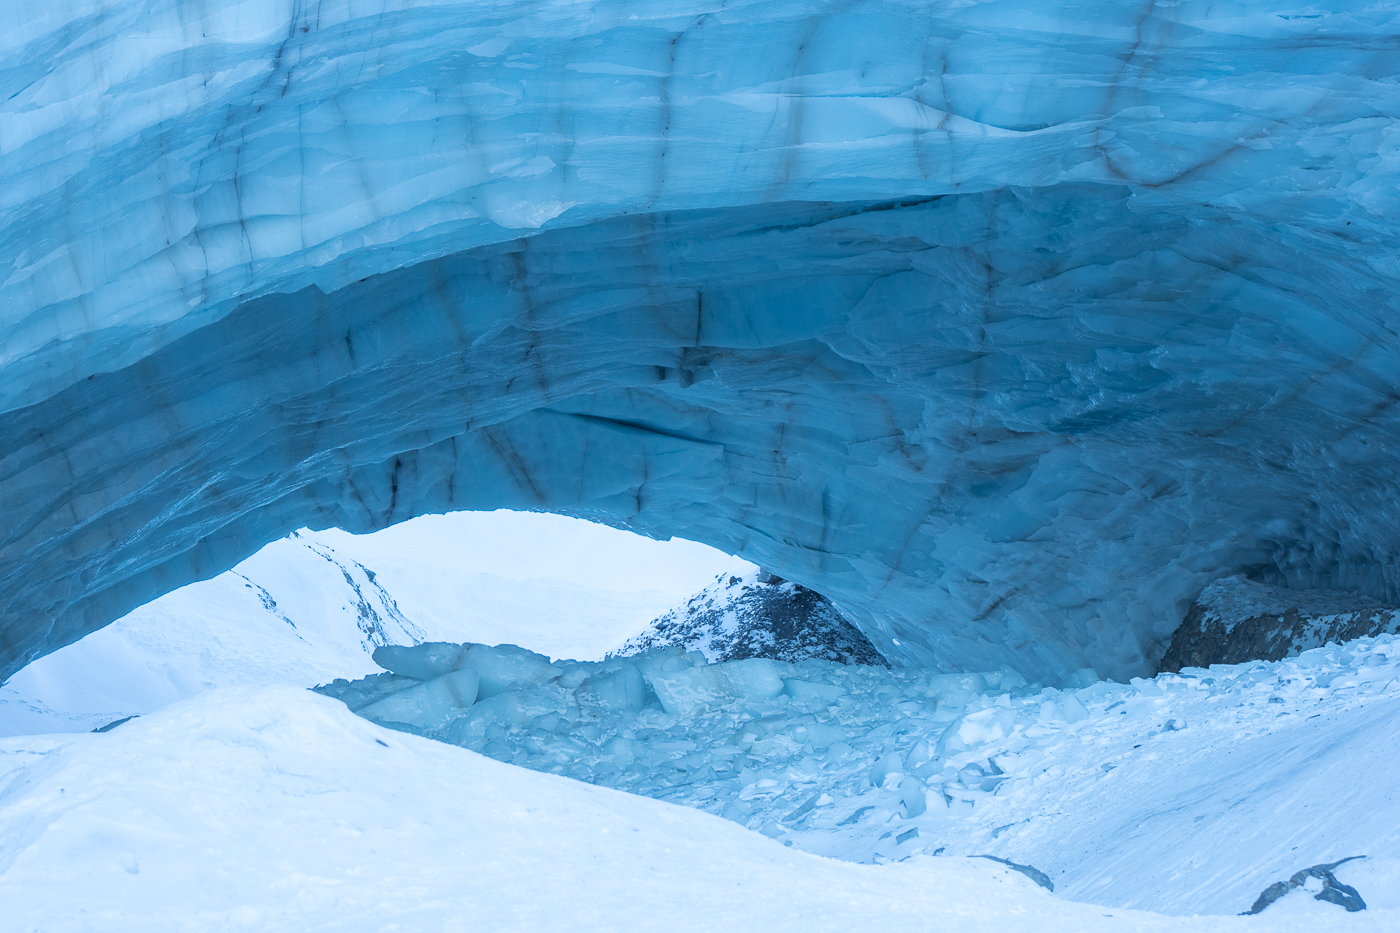 Grotte de glace/Ice Cave de Haines Junction près du parc national de Kluane